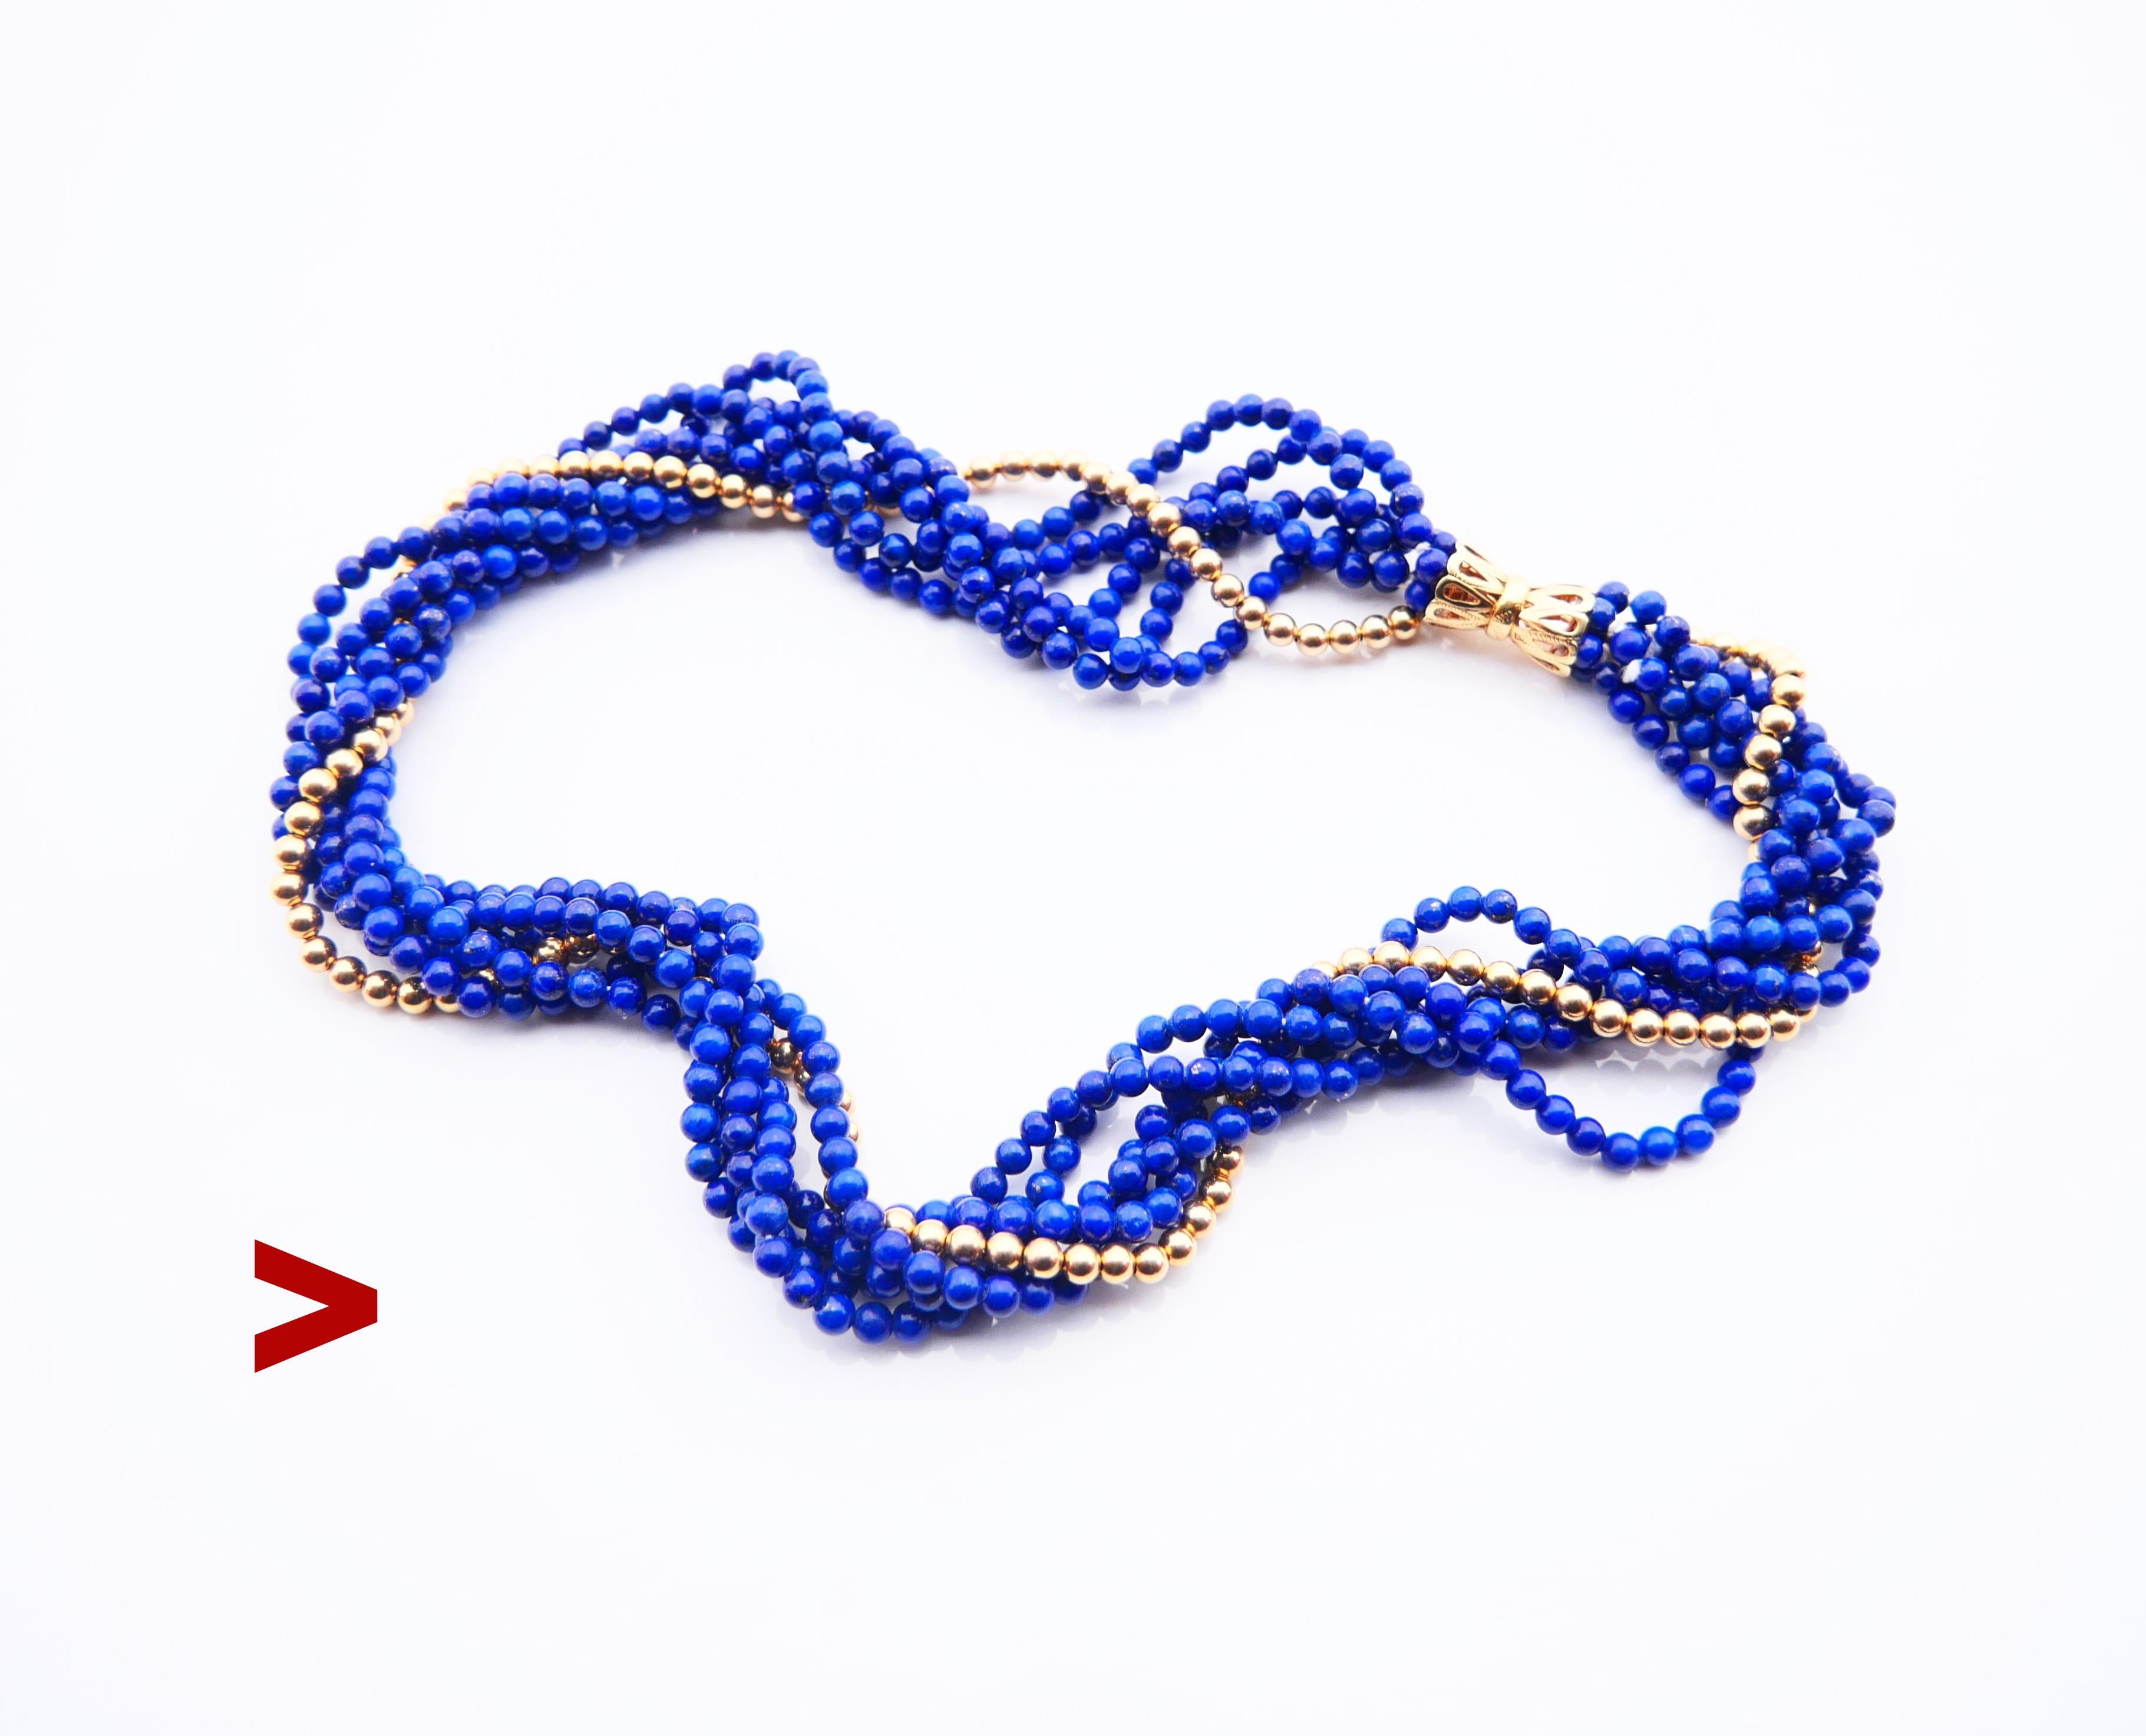 Halskette mit 5 Strängen aus zahlreichen gleich großen, rund geschliffenen Perlen mit einem Durchmesser von 4 mm aus natürlichem Lapislazuli, die mit einer Reihe massiver 14K-Perlen desselben Durchmessers verbunden sind. Ornamentales durchbrochenes